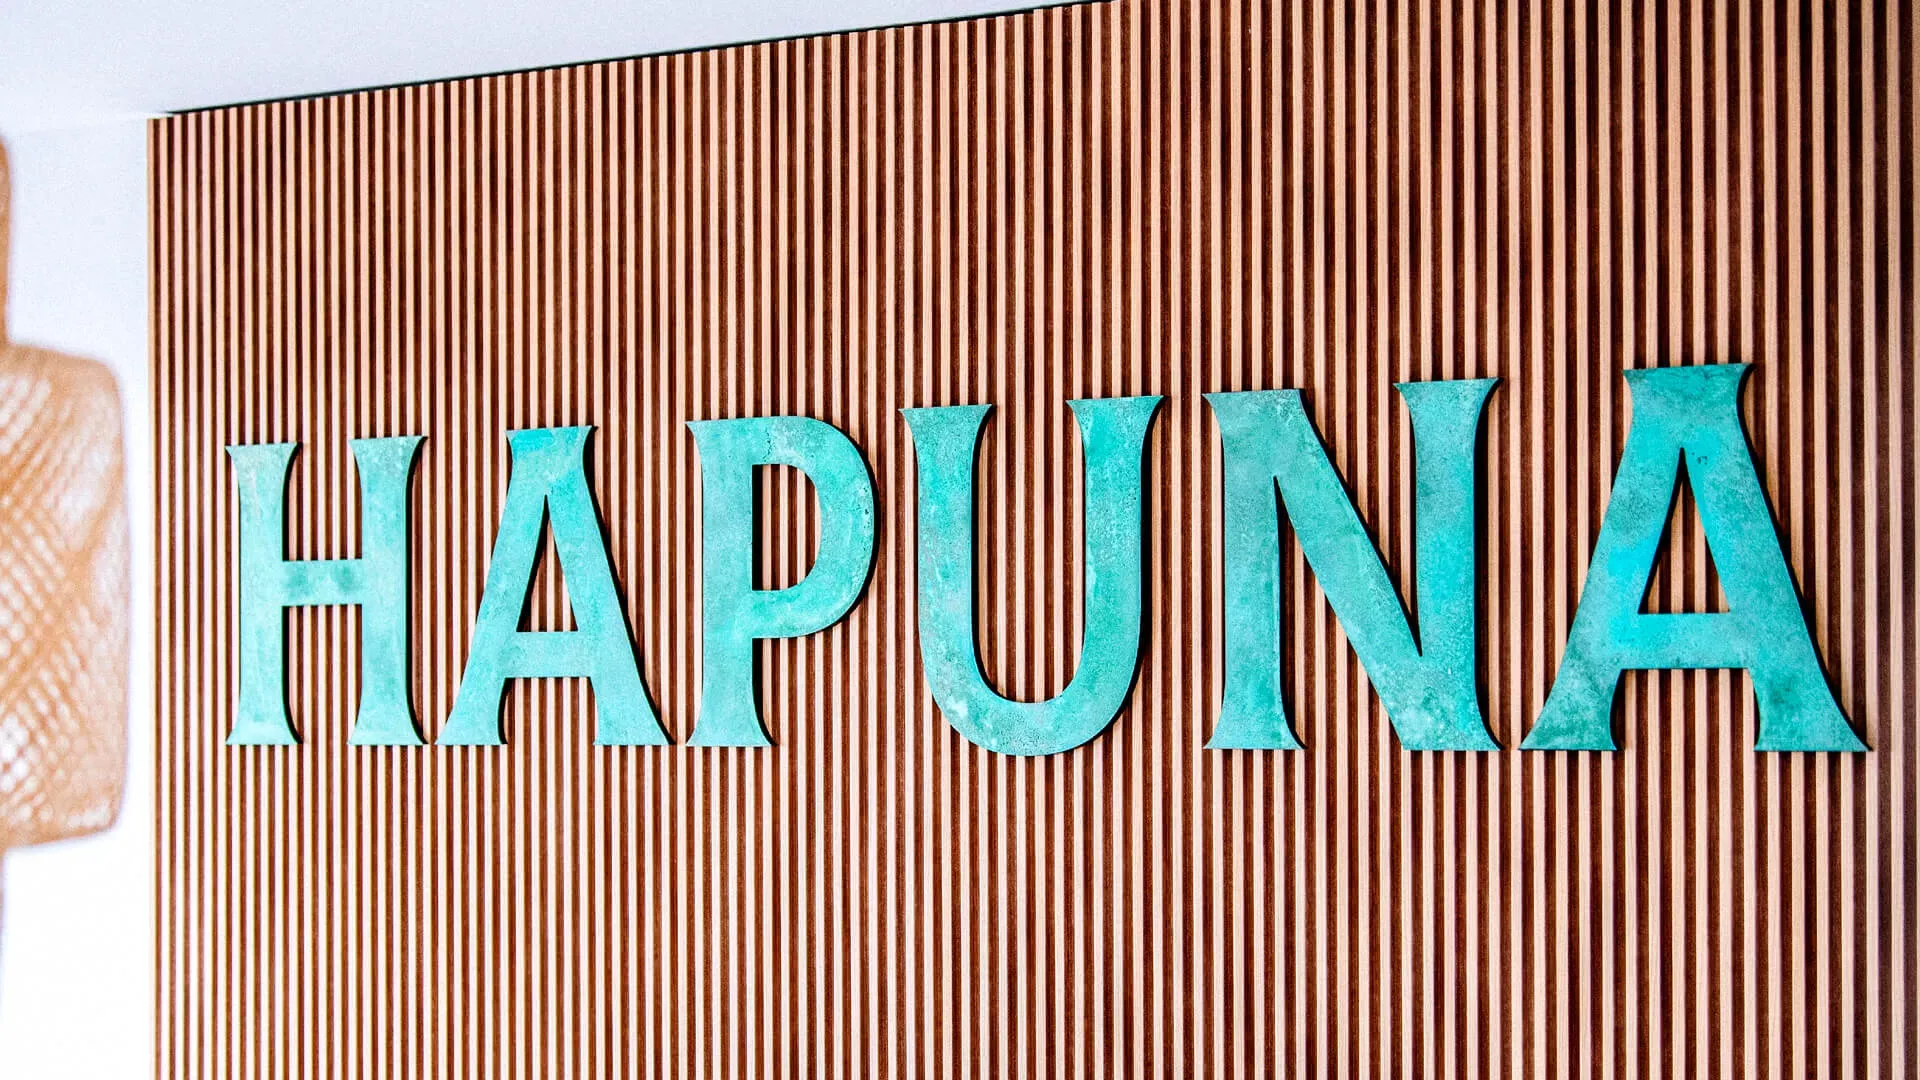 Hapuna - woord van metaal in industriële stijl bedekt met patina